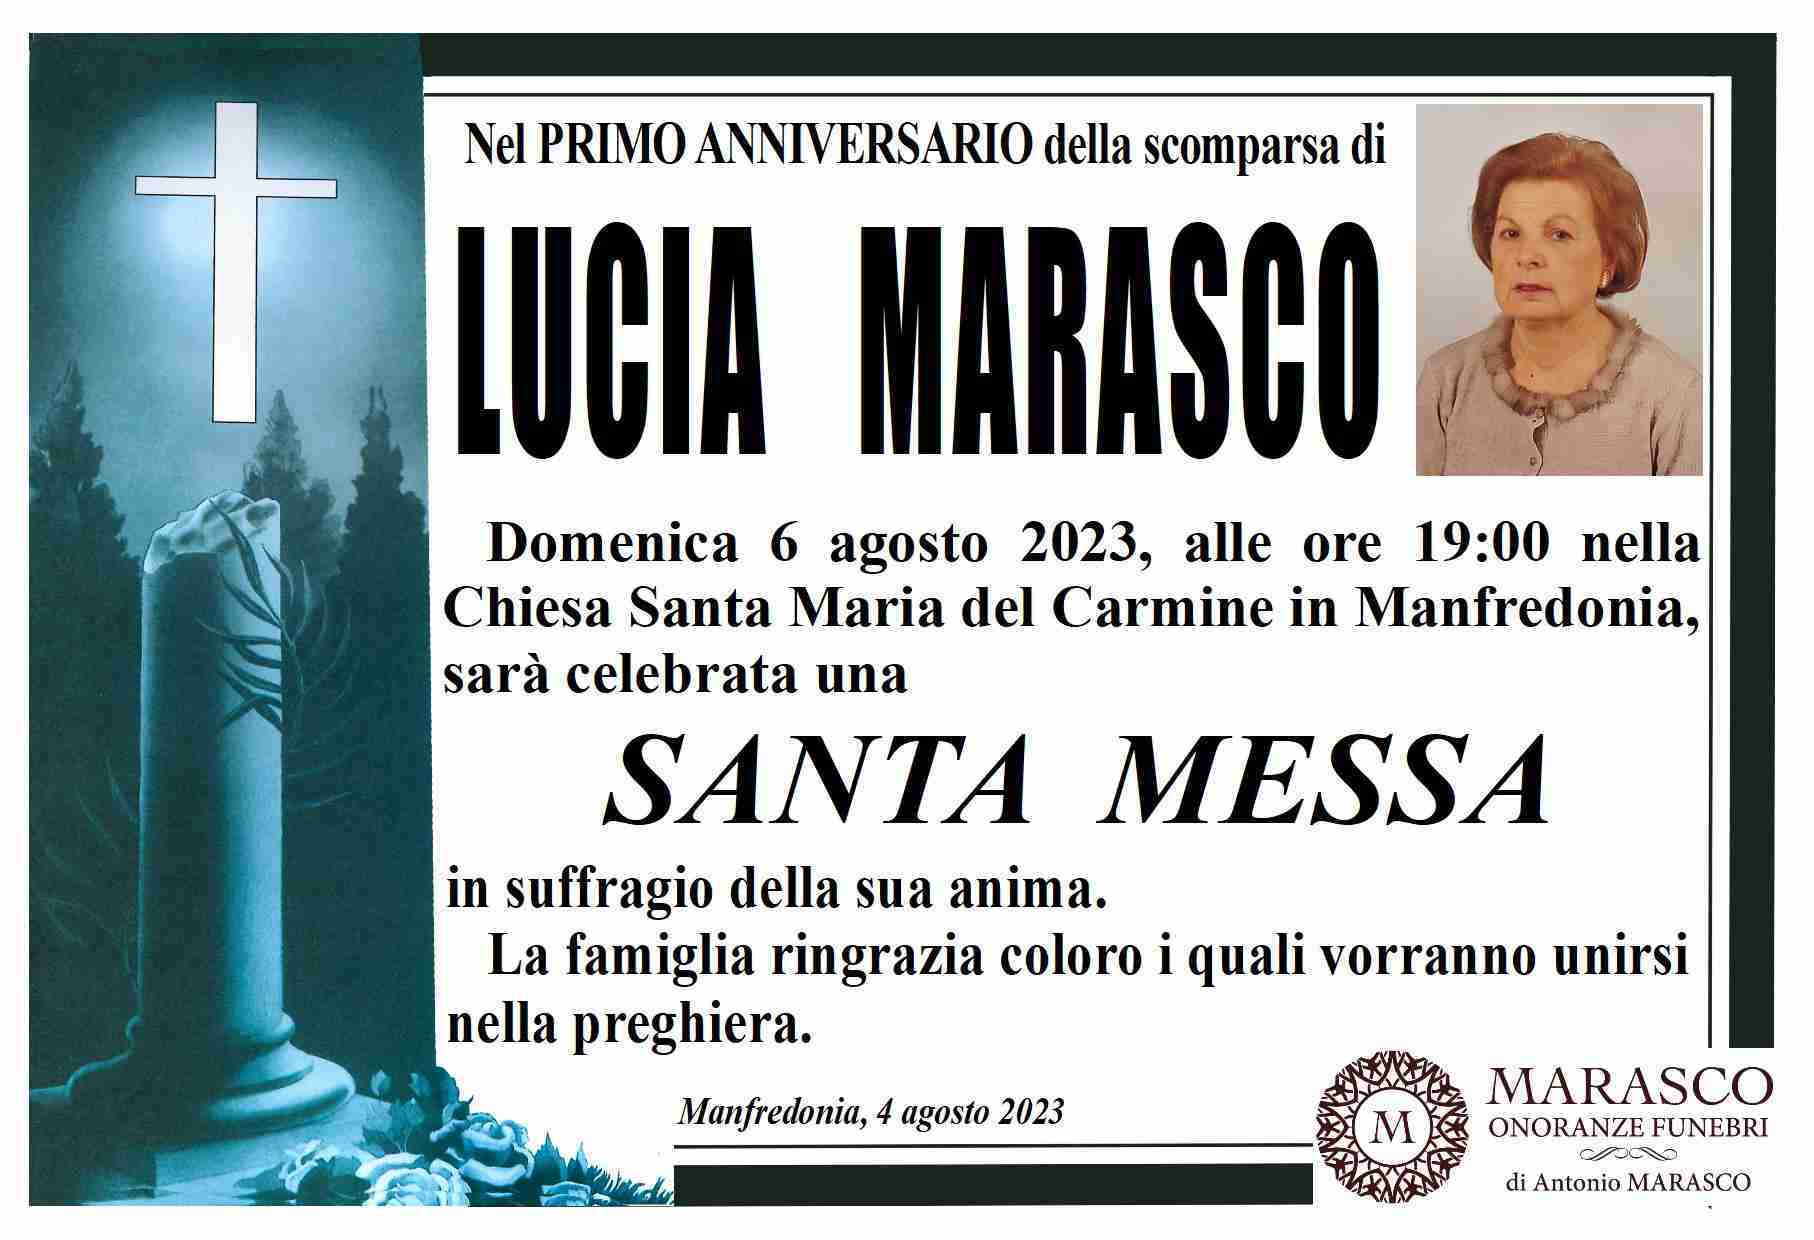 Lucia Marasco